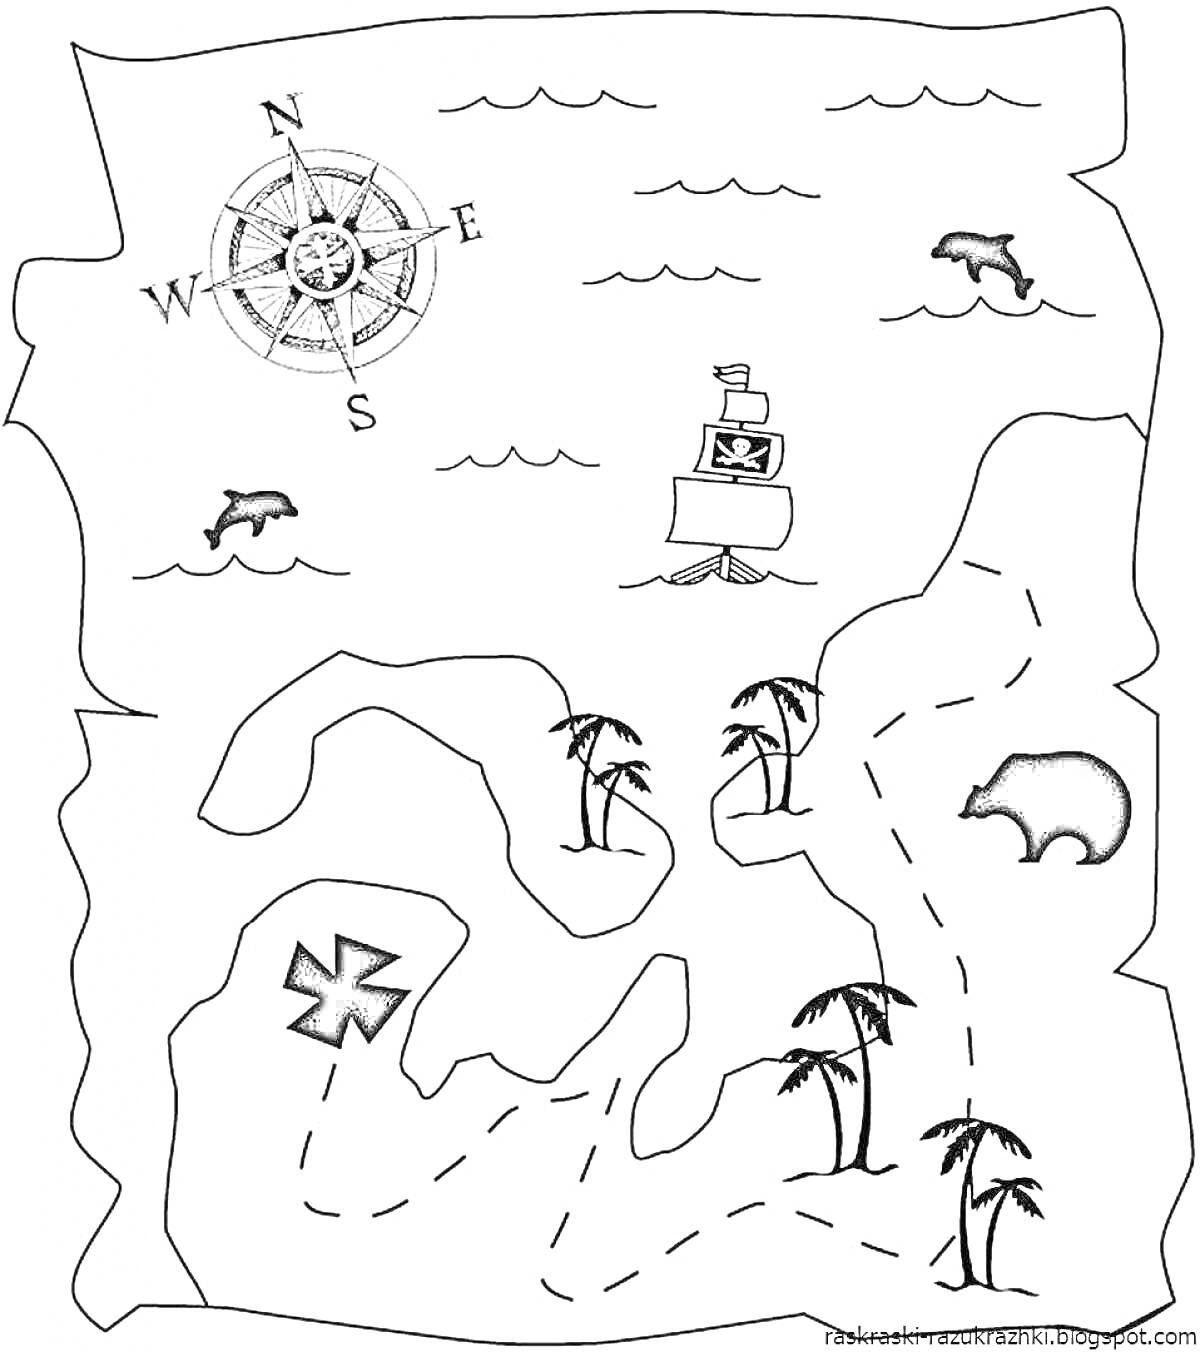 Раскраска Карта сокровищ с компасом, пиратским кораблем, медведем, крестом, пальмами и дельфинами